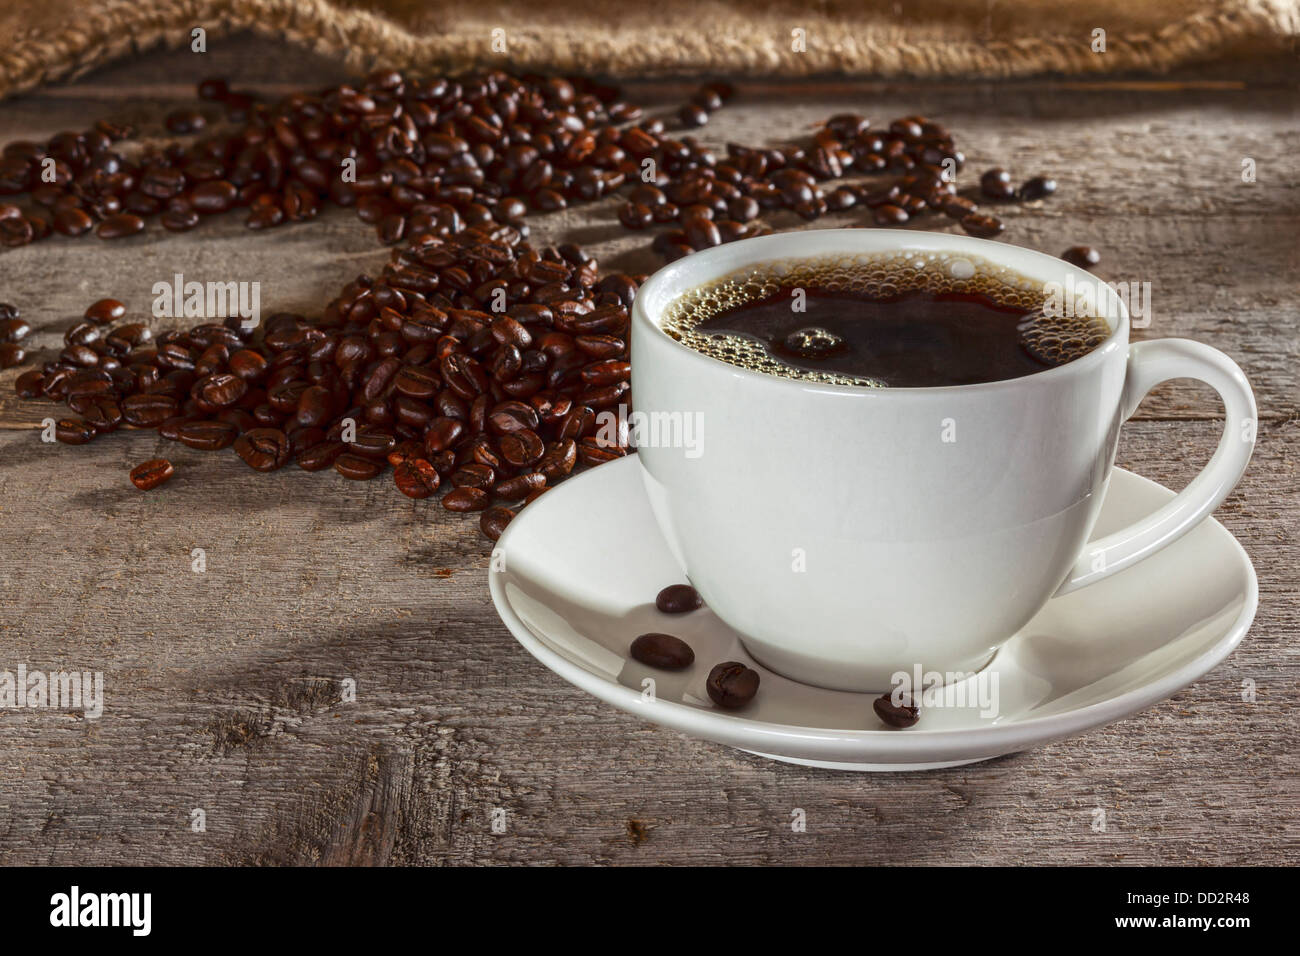 Tazza di caffè e caffè in grani 0n sfondo rustico - tazza da caffè con piattino riempito con caffè espresso, con i chicchi di caffè e tela... Foto Stock